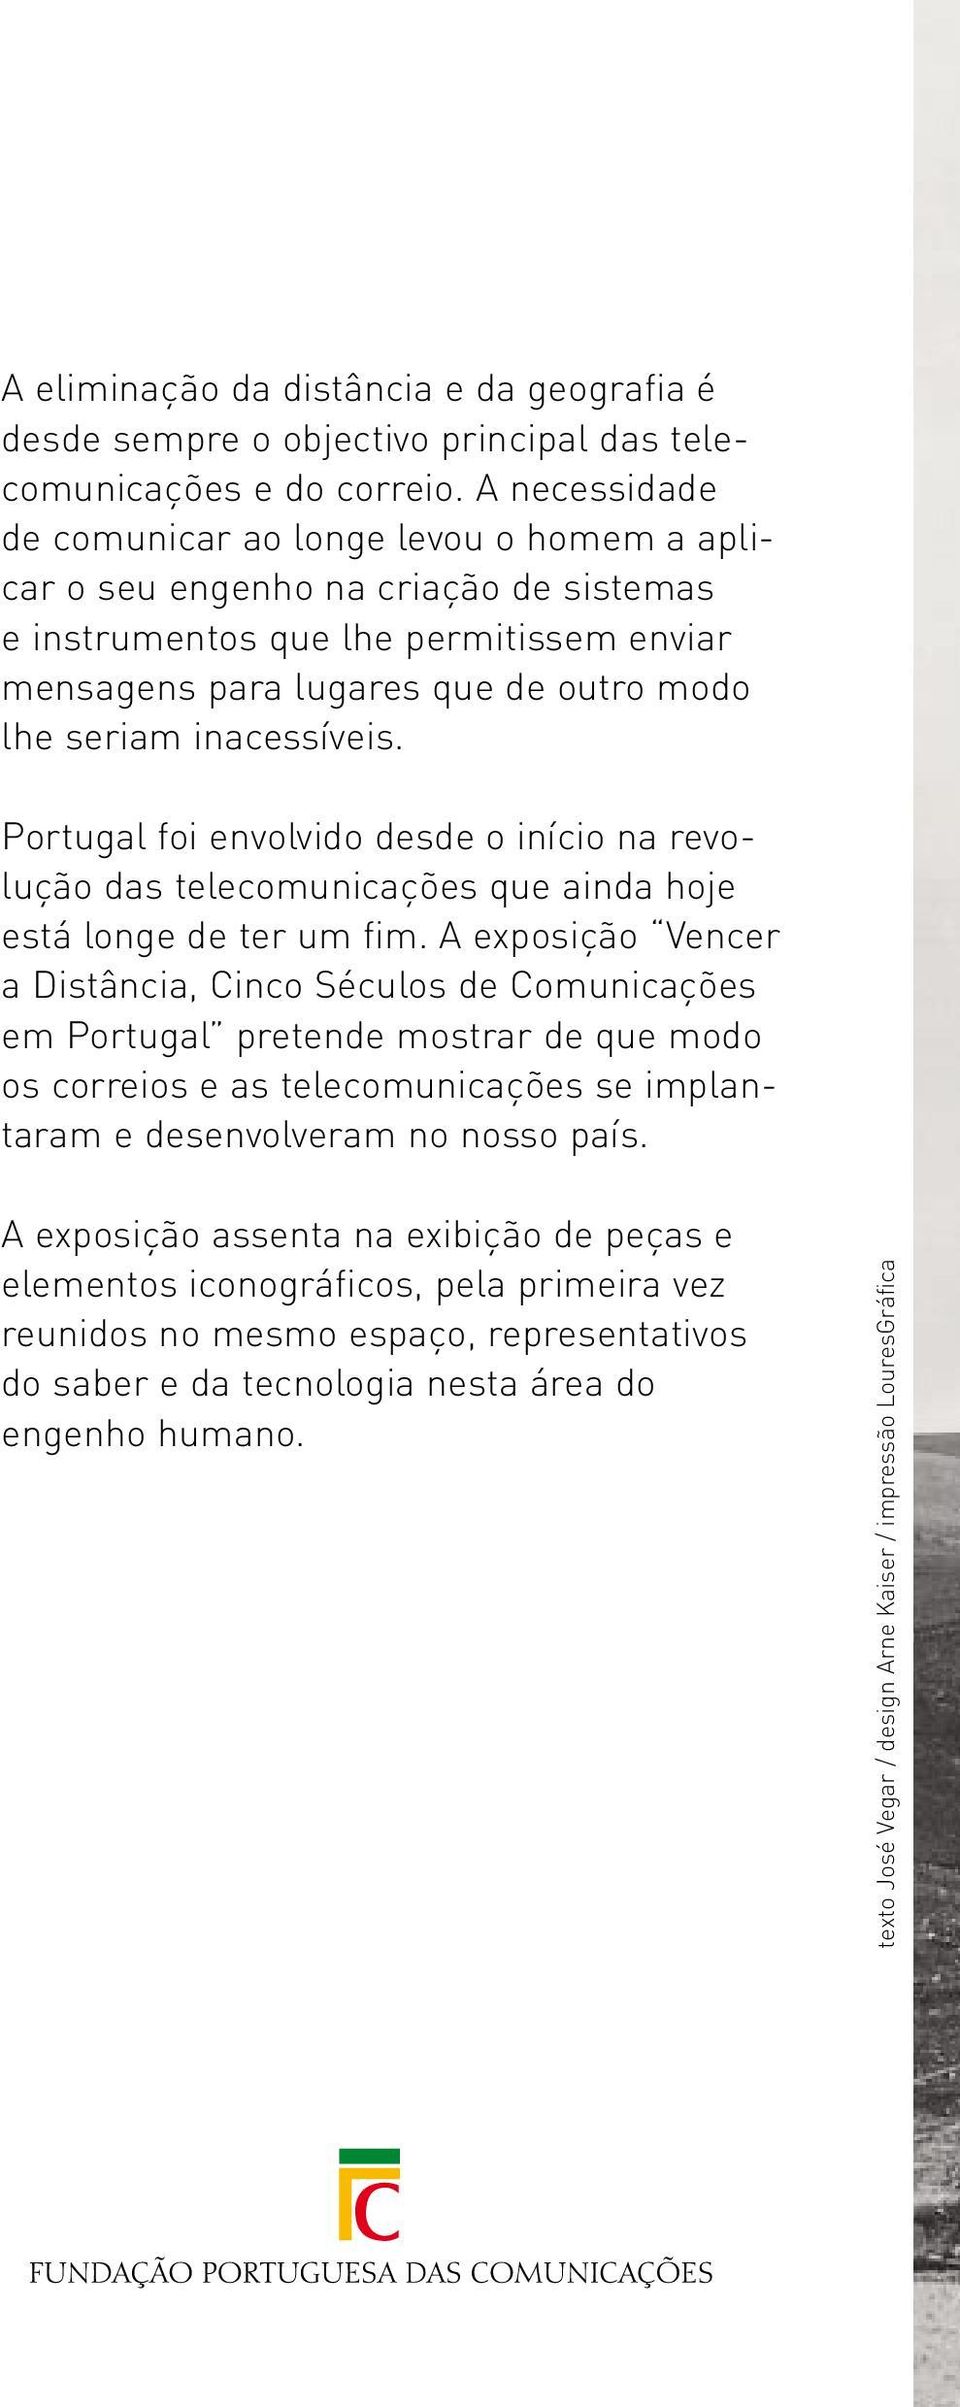 inacessíveis. Portugal foi envolvido desde o início na revolução das telecomunicações que ainda hoje está longe de ter um fim.